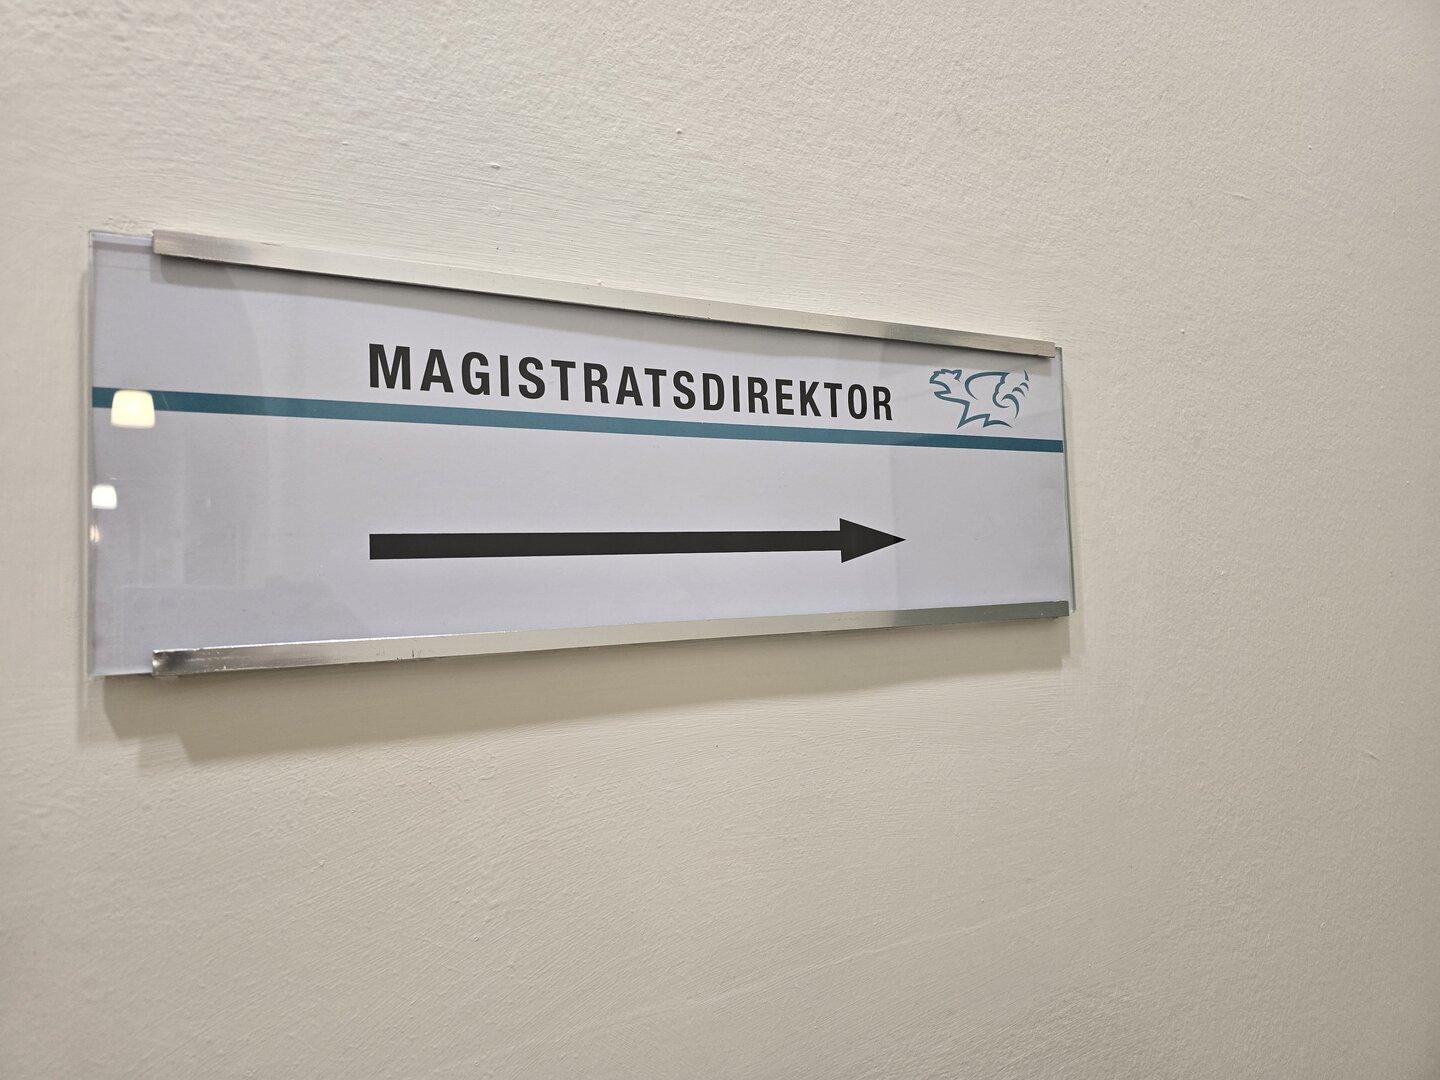 Gerüchteküche in Klagenfurt brodelt: Kehrt Jost als Magistratsdirektor zurück?